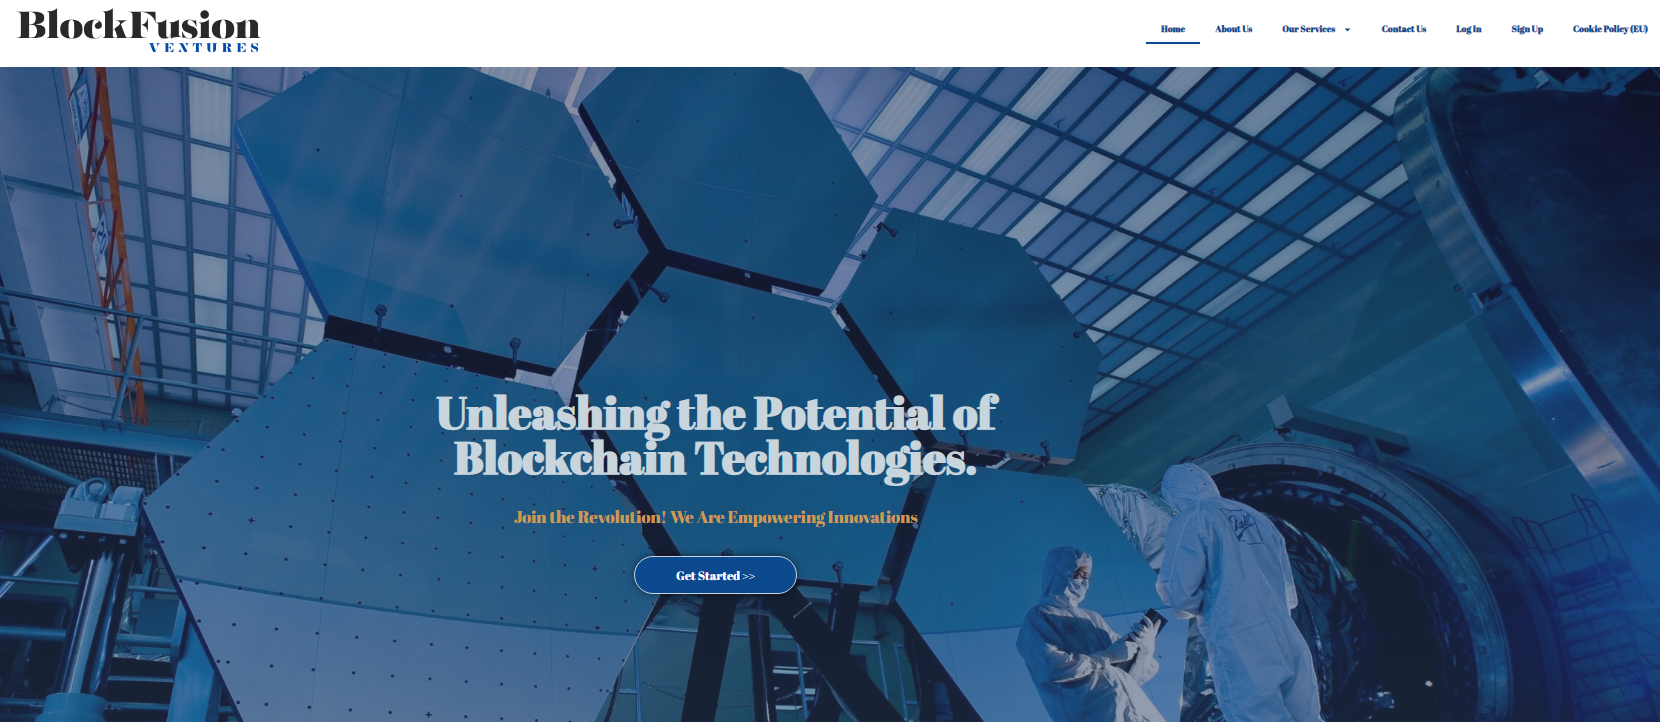 BlockFusion Ventures-homepage